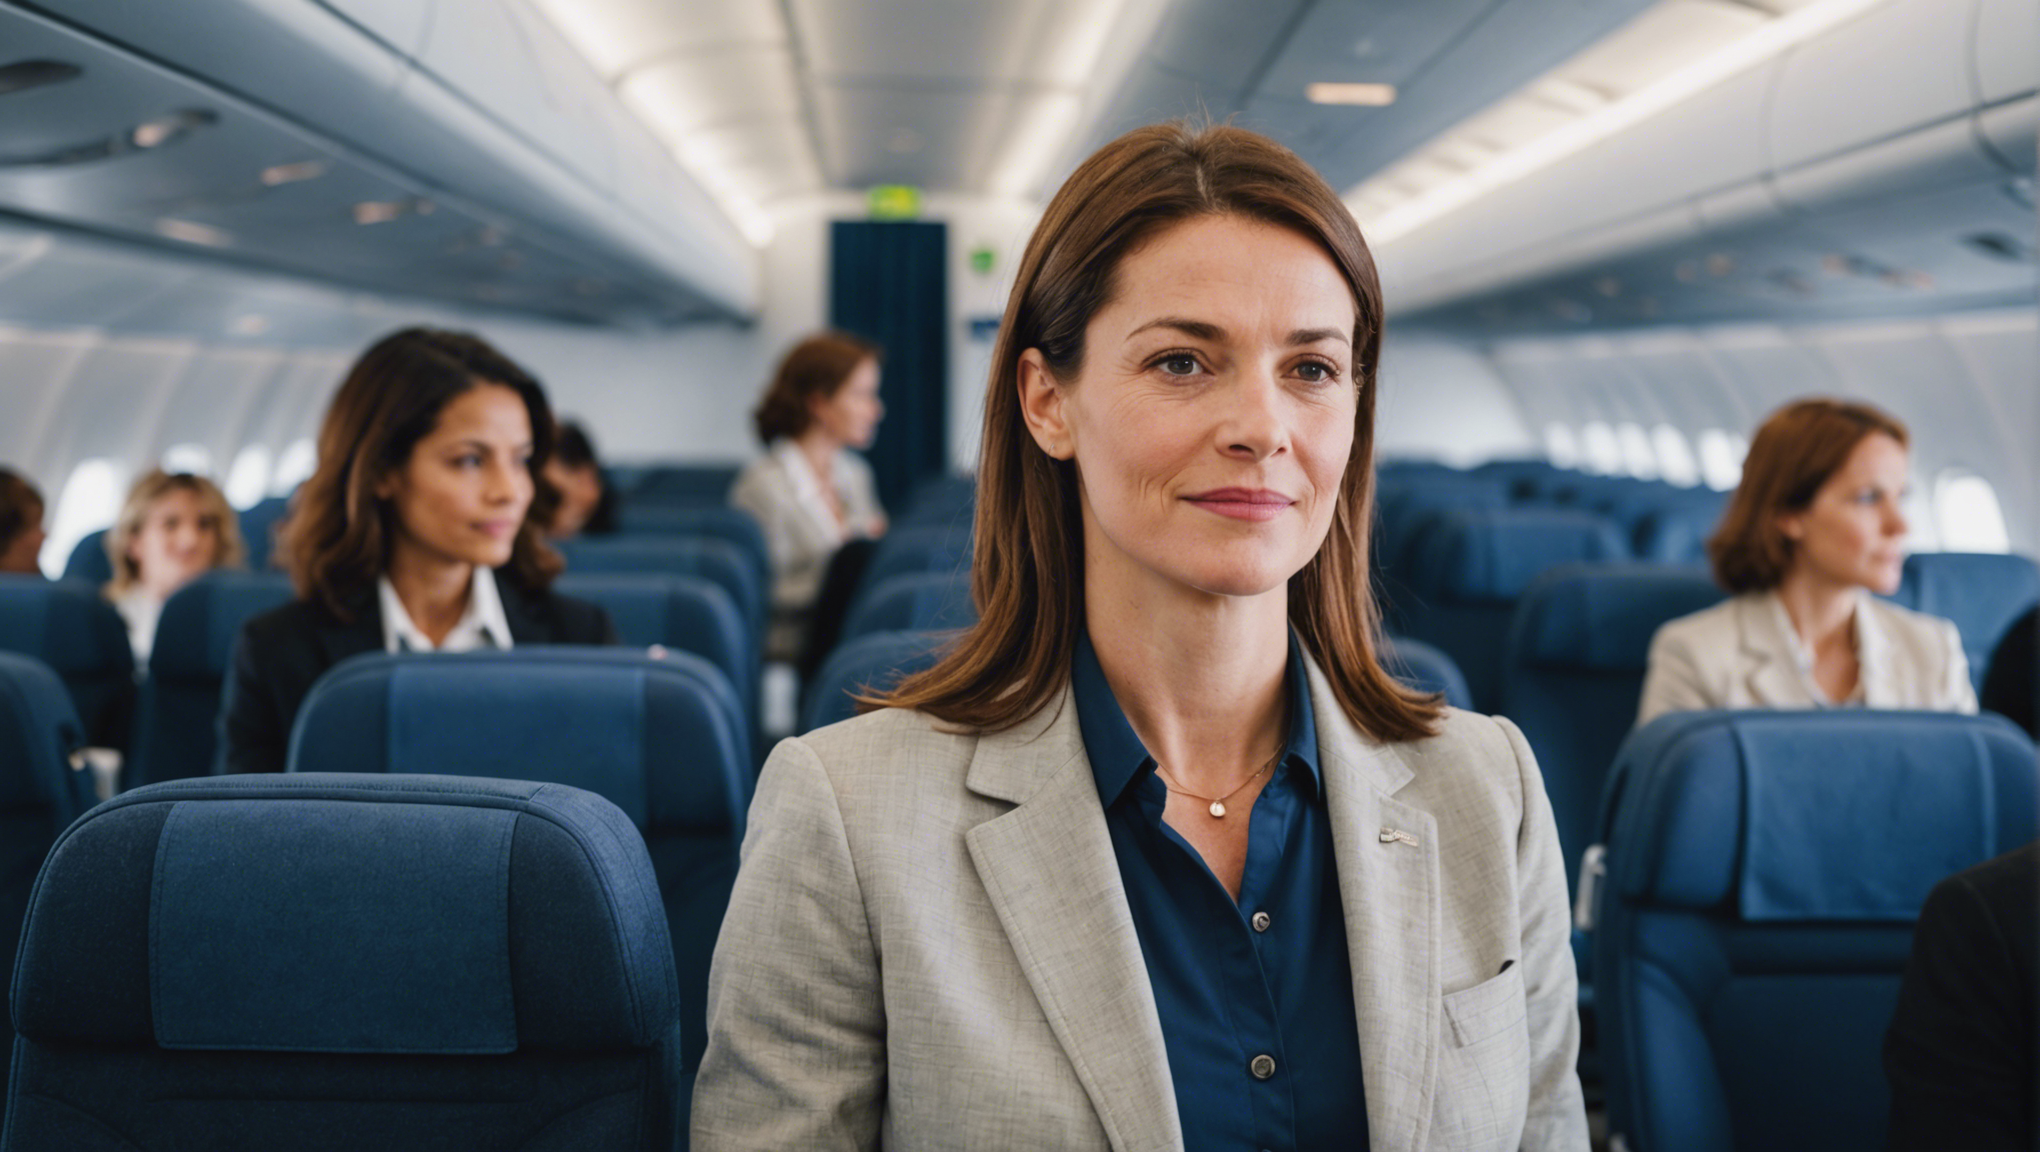 découvrez comment les femmes représentent 51% des passagers aériens en france et jouent un rôle essentiel dans l'aviation française.